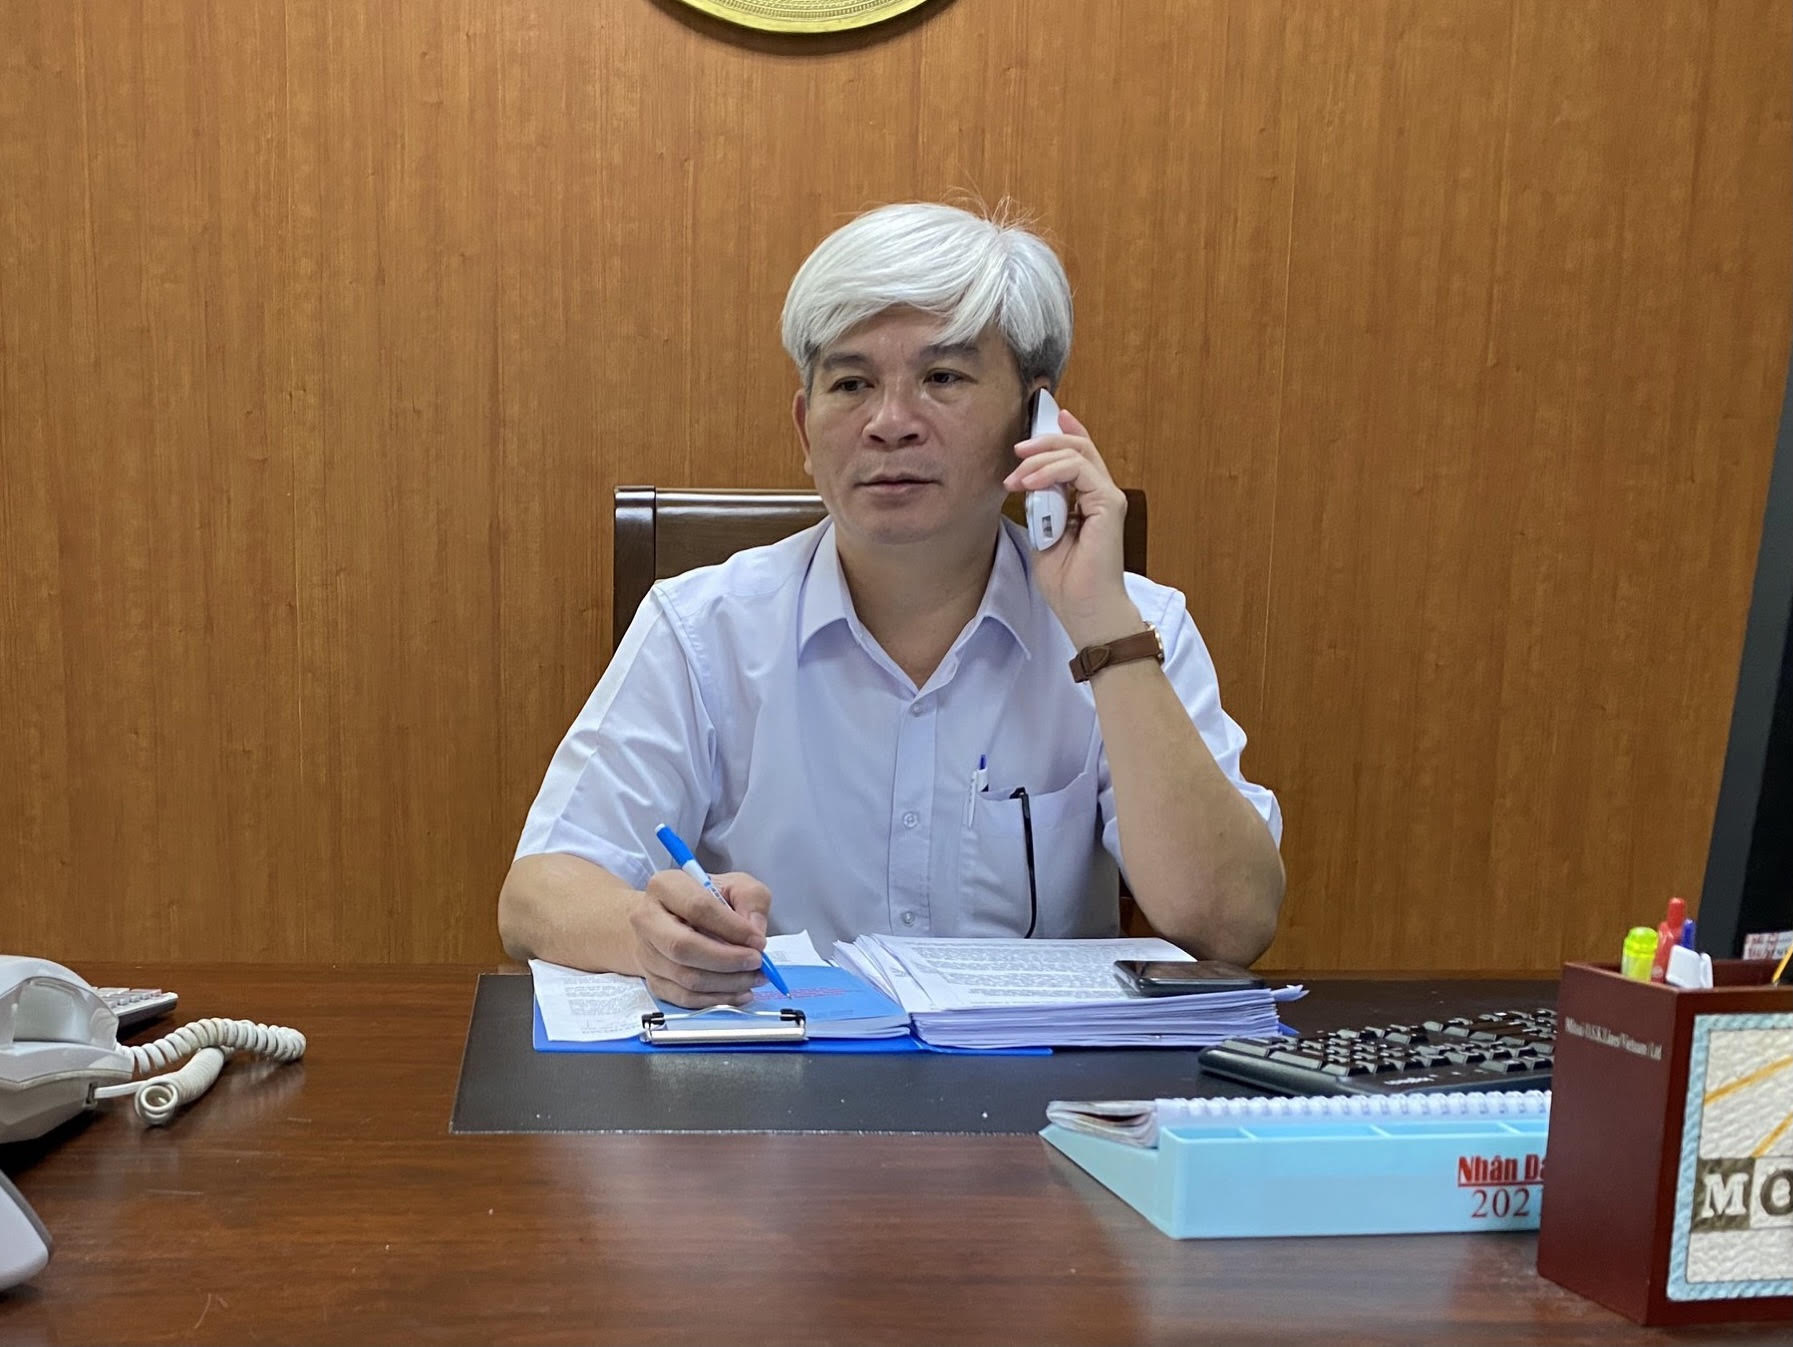 Ông Lê Văn Thức, Giám đốc Cảng vụ hàng hải Vũng Tàu cho biết, cụm cảng container nước sâu tại khu vực Cái mép – Thị Vải đã thông qua những tàu hàng siêu trường, siêu trọng để kết nối một cách tốt nhất hàng hóa sản xuất trong nước ra nước ngoài